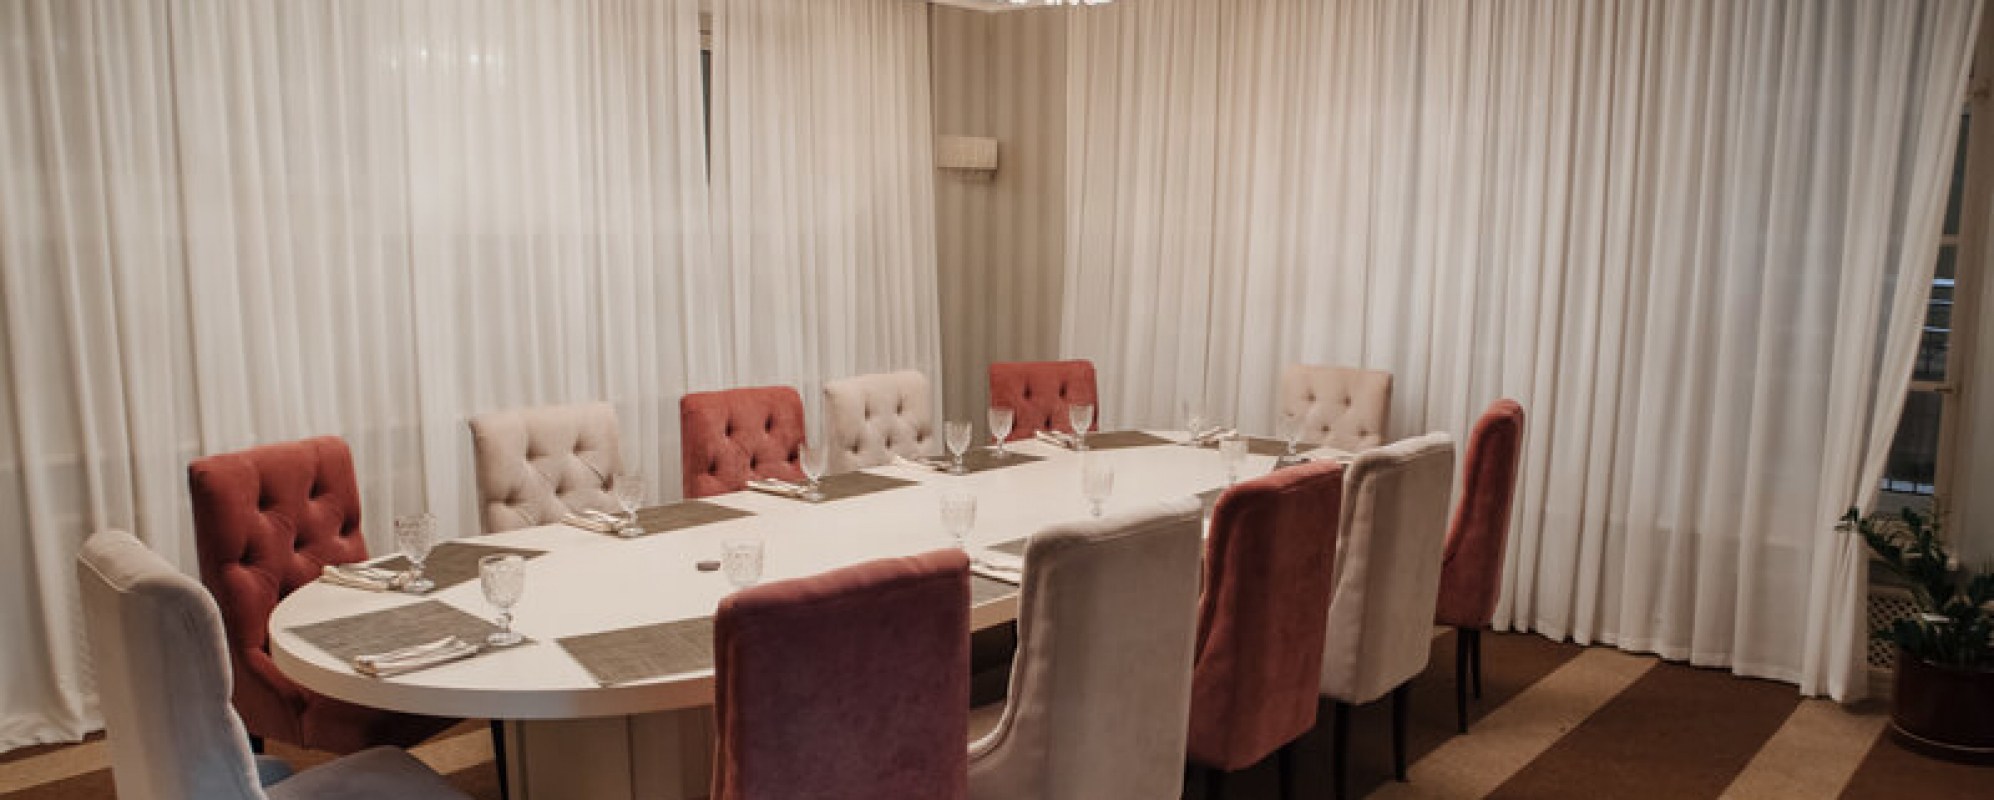 Фотографии комнаты для переговоров Имерети